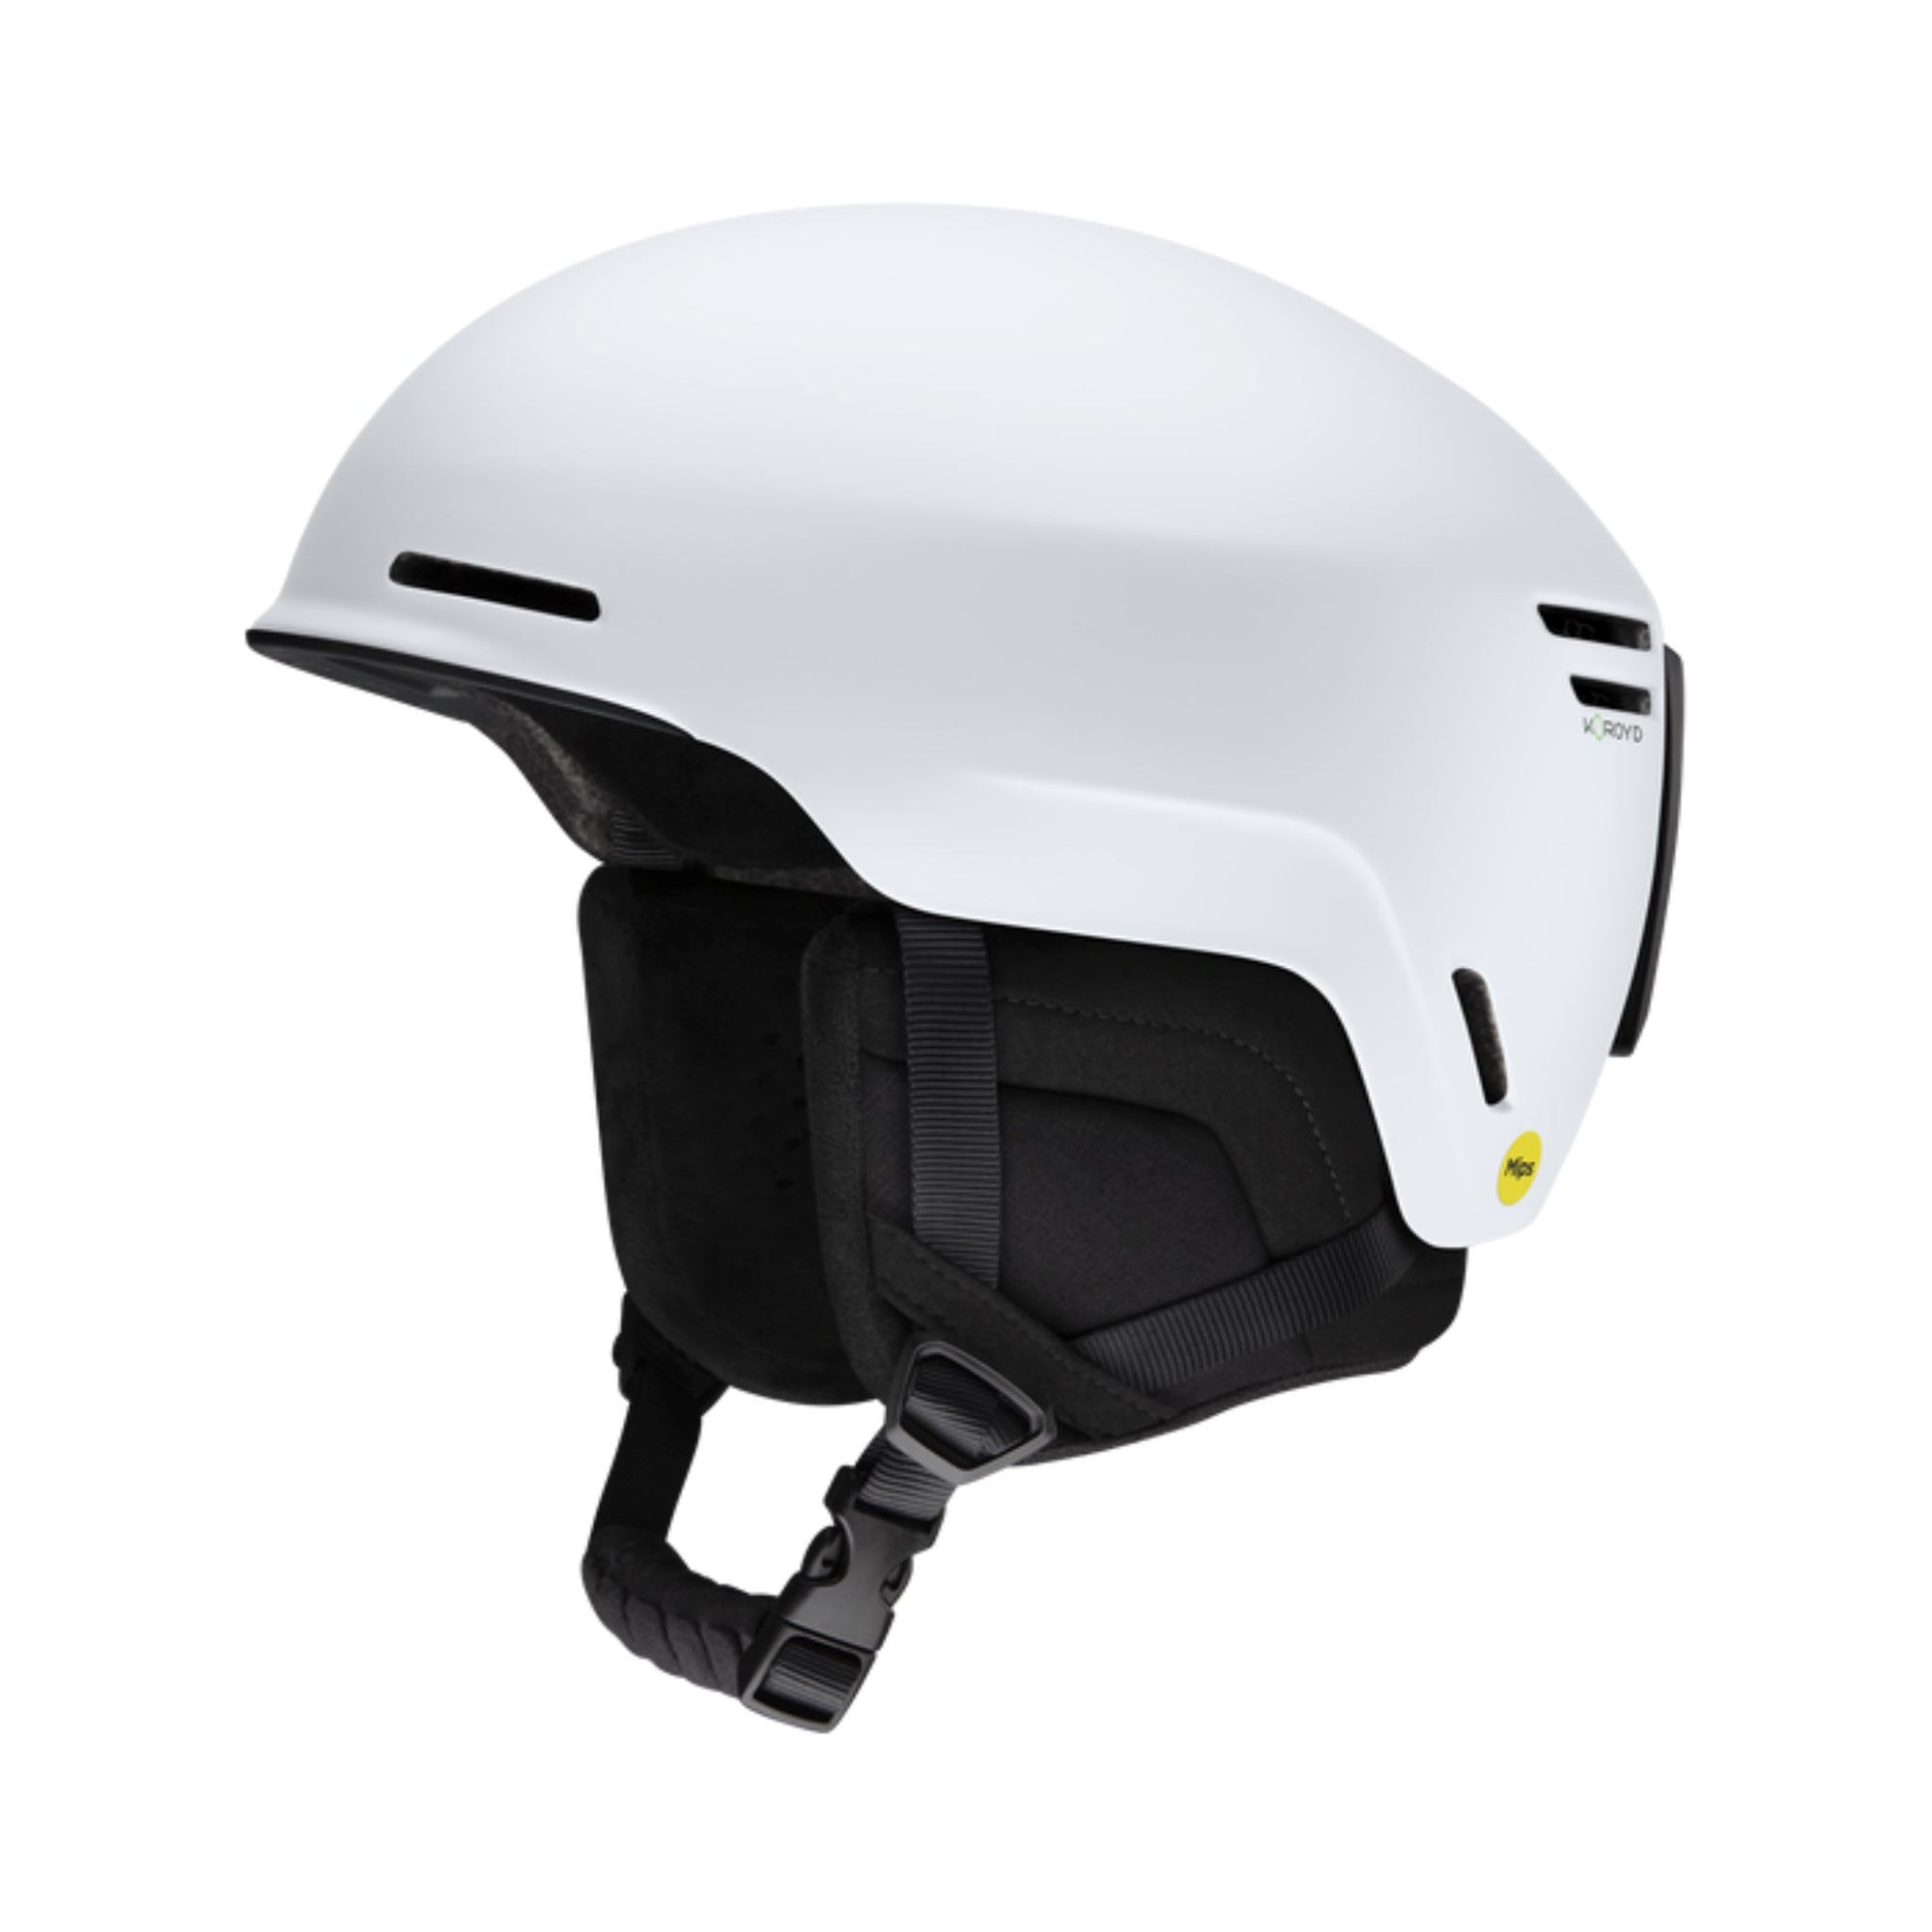 Mens Smith Method MIPS Helmet -Matte White Helmets Smith S - (51-55CM) 